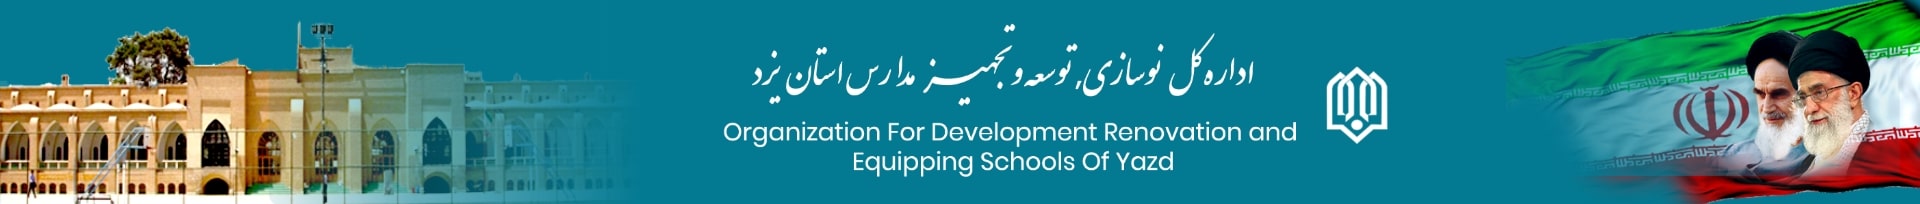 اداره کل نوسازی ، توسعه و تجهیز مدارس استان یزد